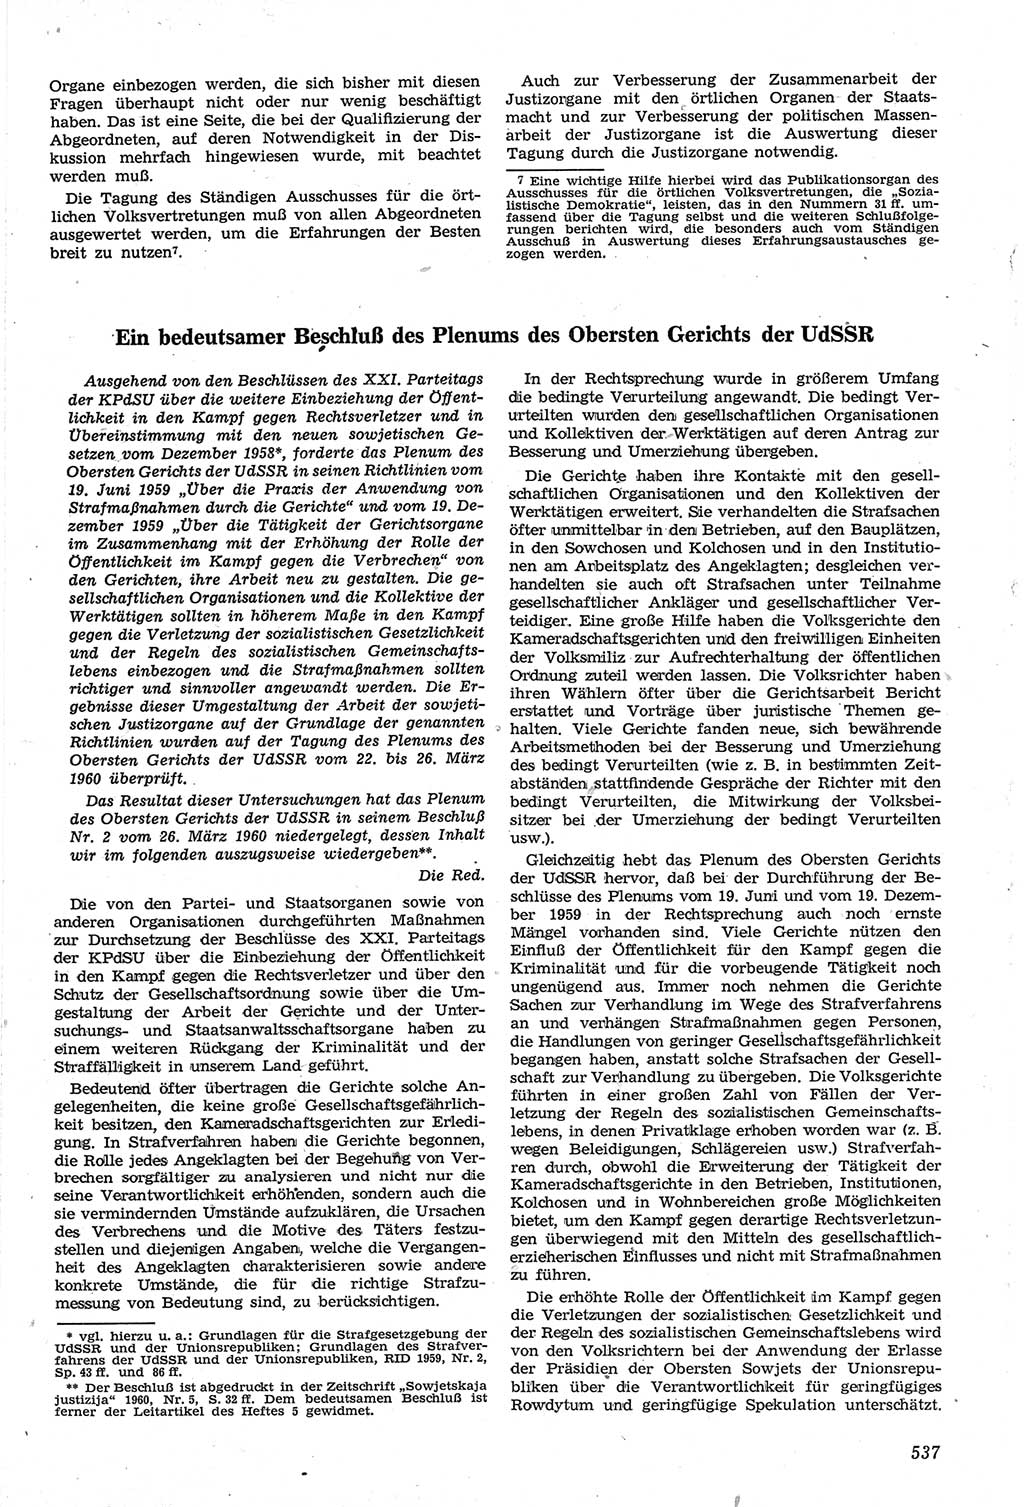 Neue Justiz (NJ), Zeitschrift für Recht und Rechtswissenschaft [Deutsche Demokratische Republik (DDR)], 14. Jahrgang 1960, Seite 537 (NJ DDR 1960, S. 537)